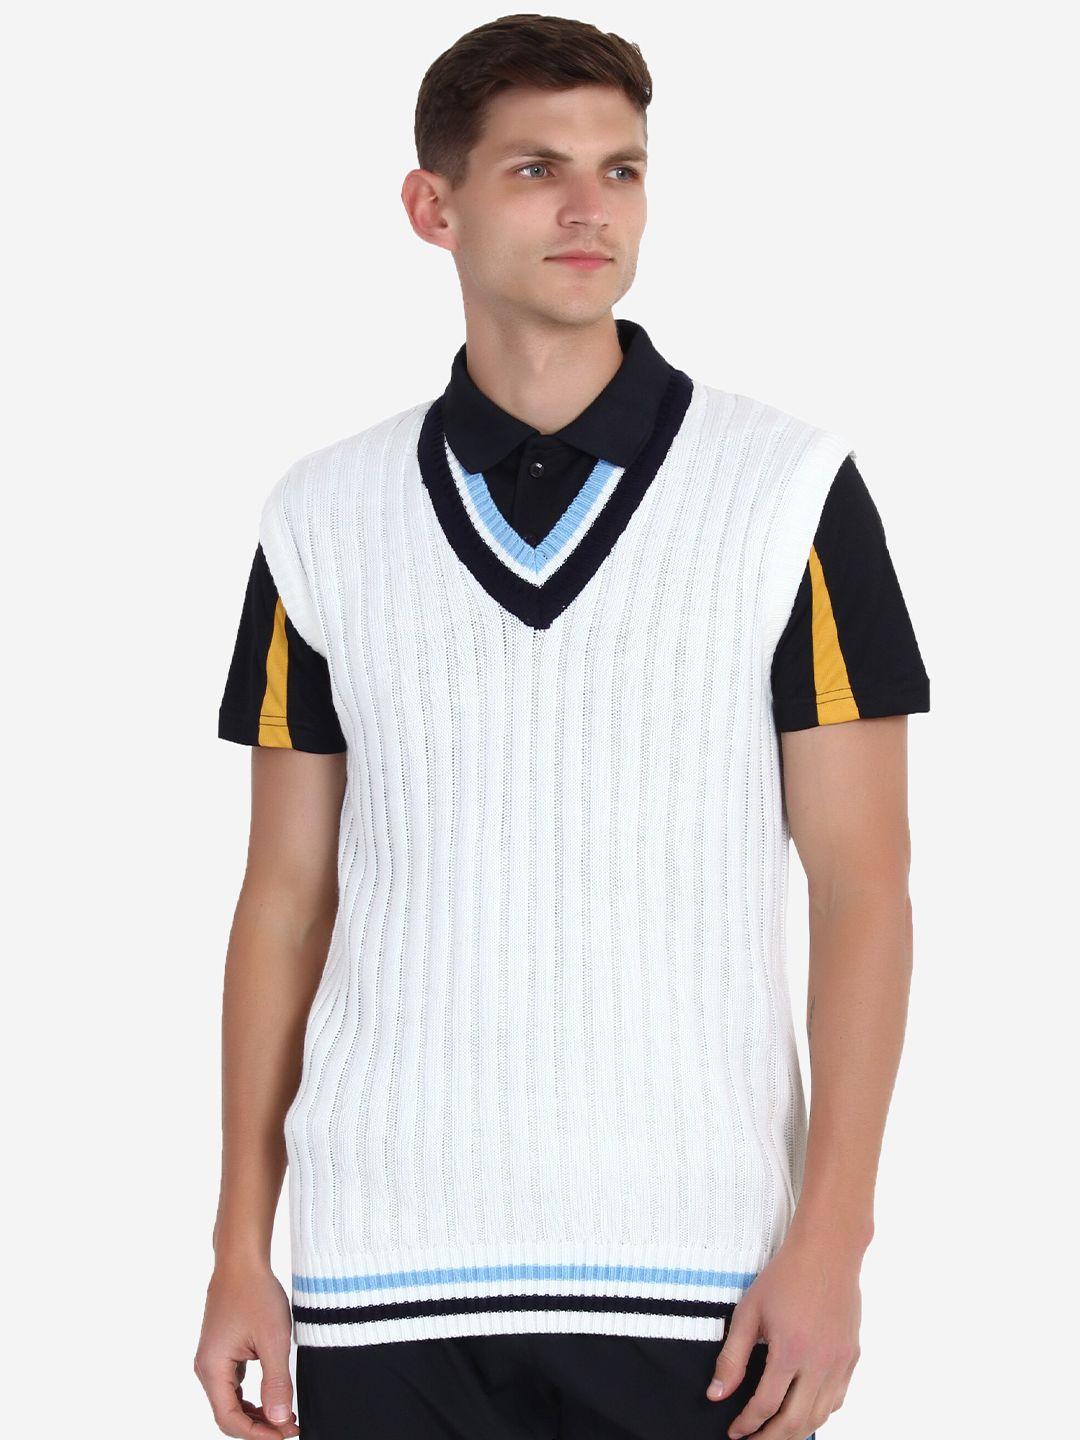 joe hazel men white & black acrylic sweater vest